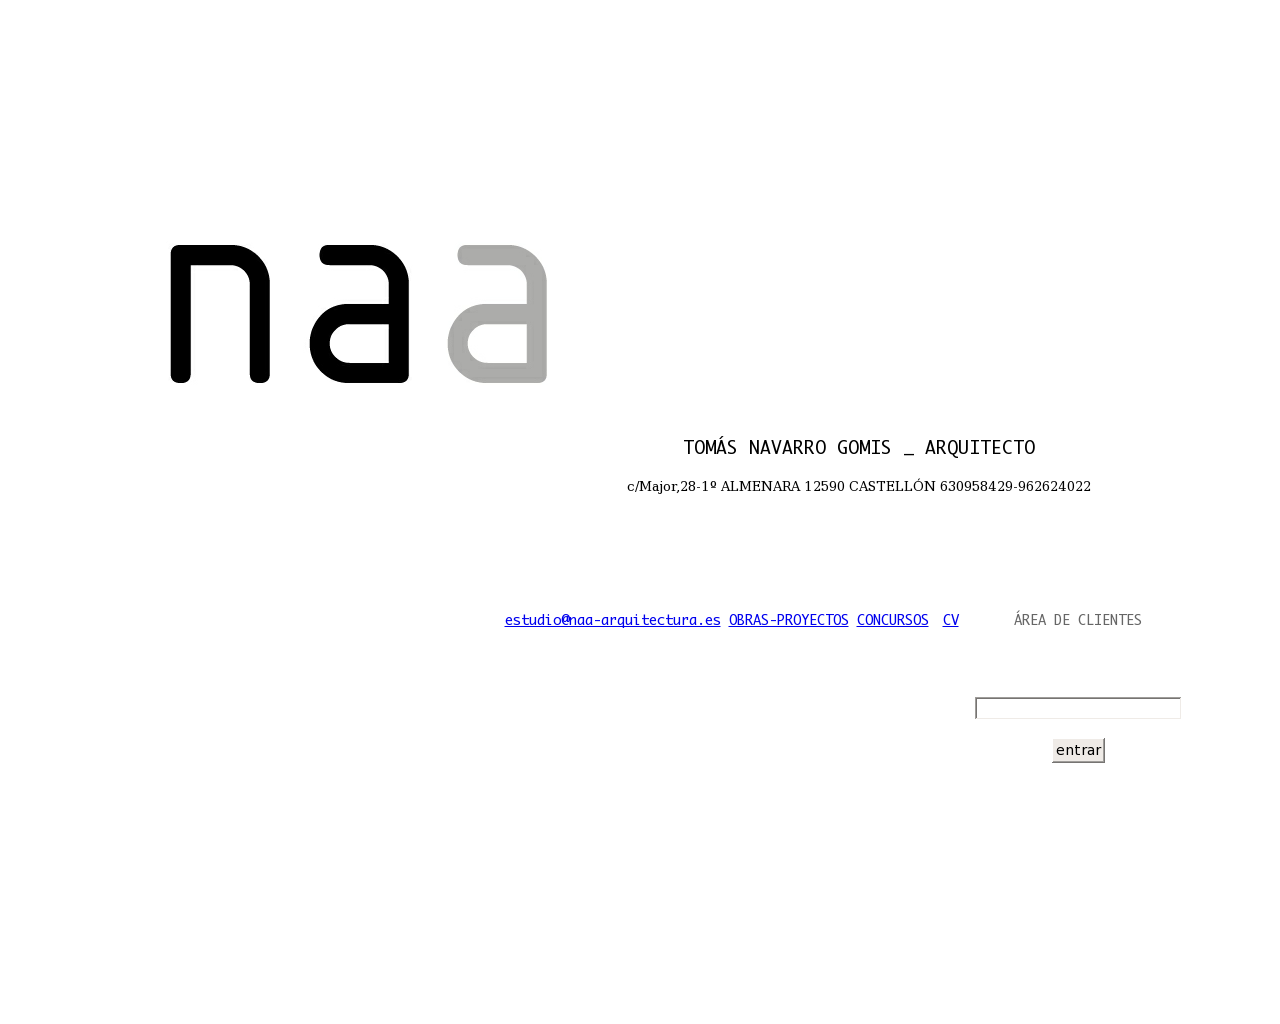 El sitio de la imagen naa-arquitectura.es en 1280x1024